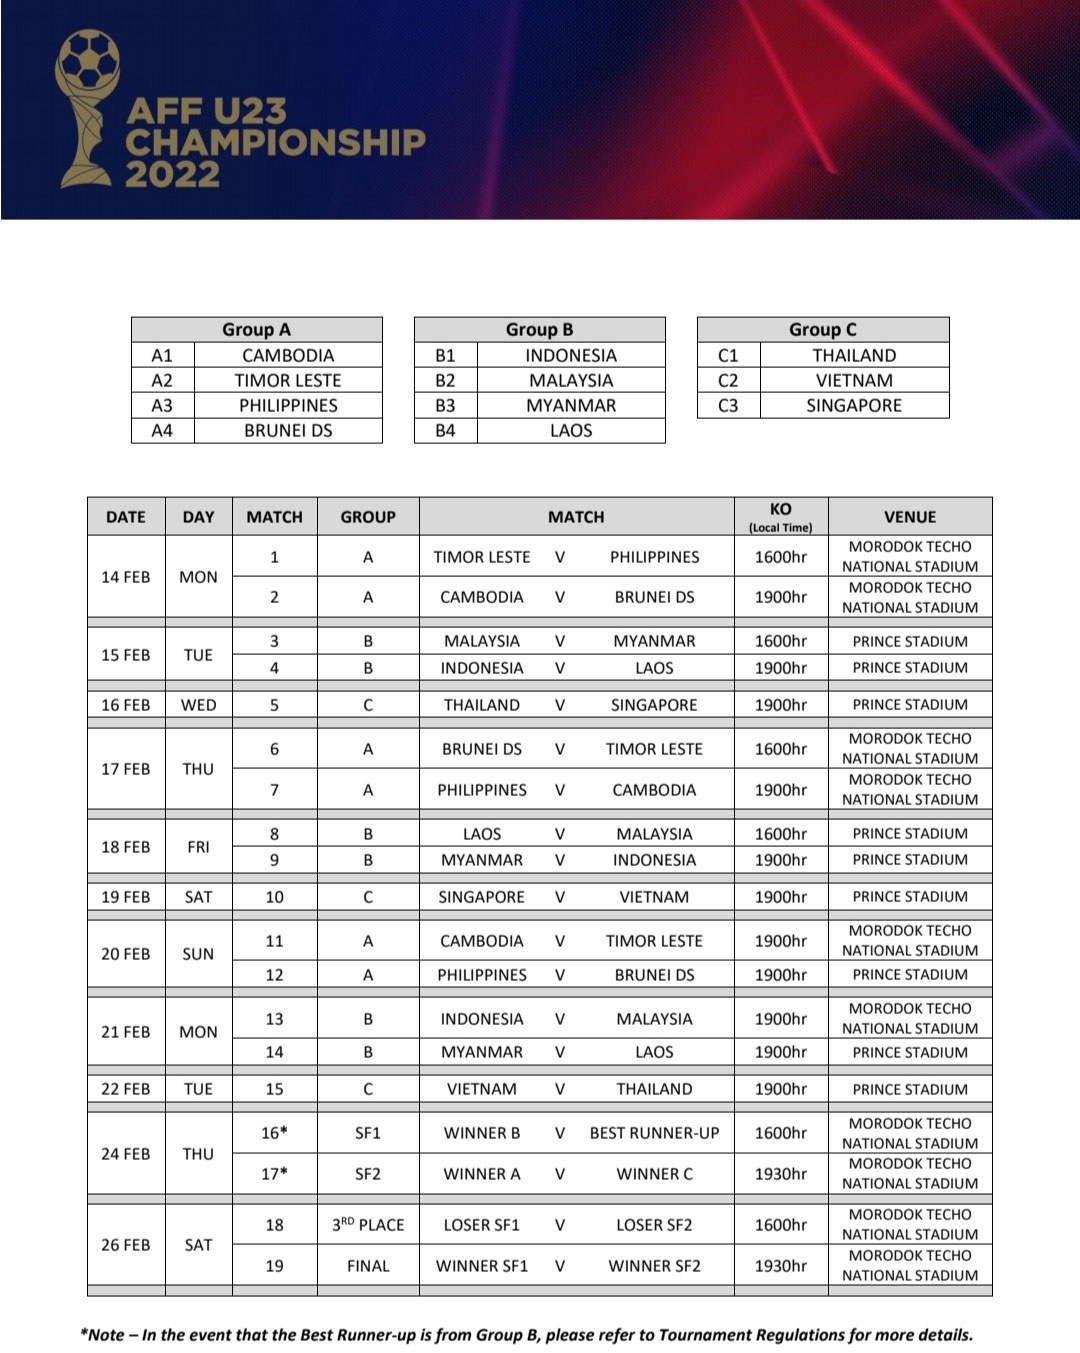 Lịch thi đấu U23 Đông Nam Á